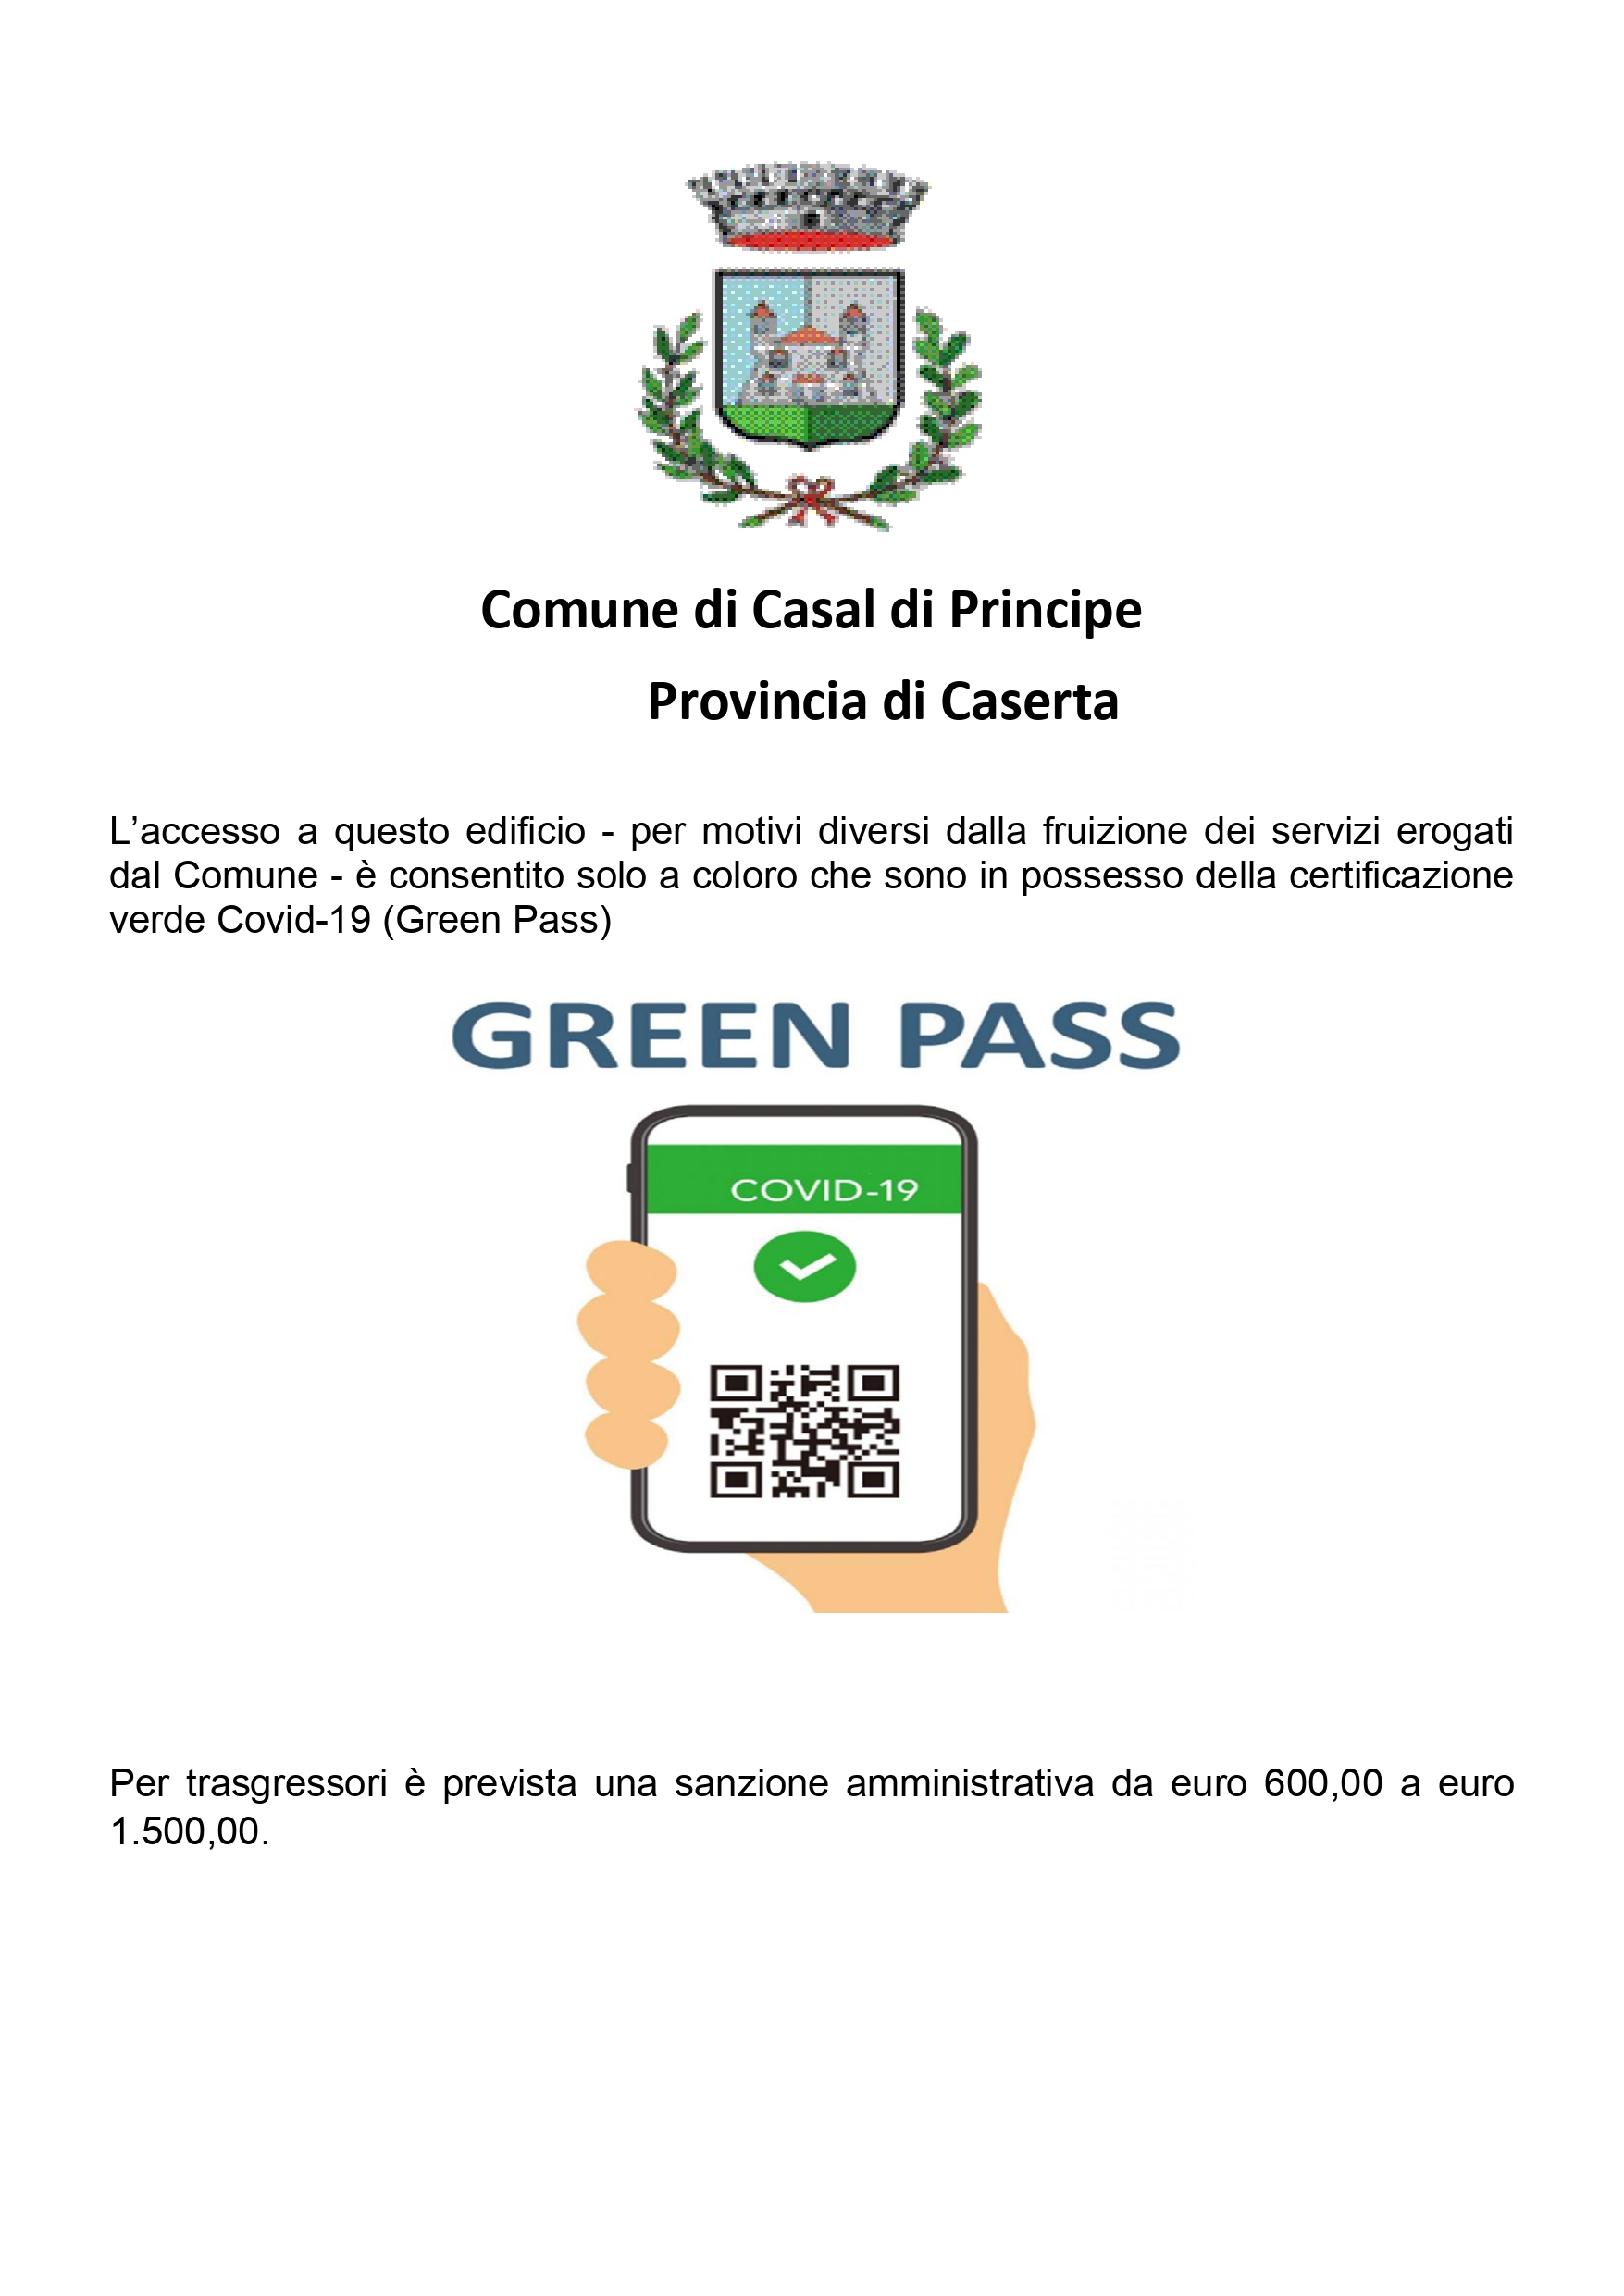 ACCESSO UFFICI COMUNALI CON OBBLIGO DI GREEN PASS – PERSONALE ADDETTO